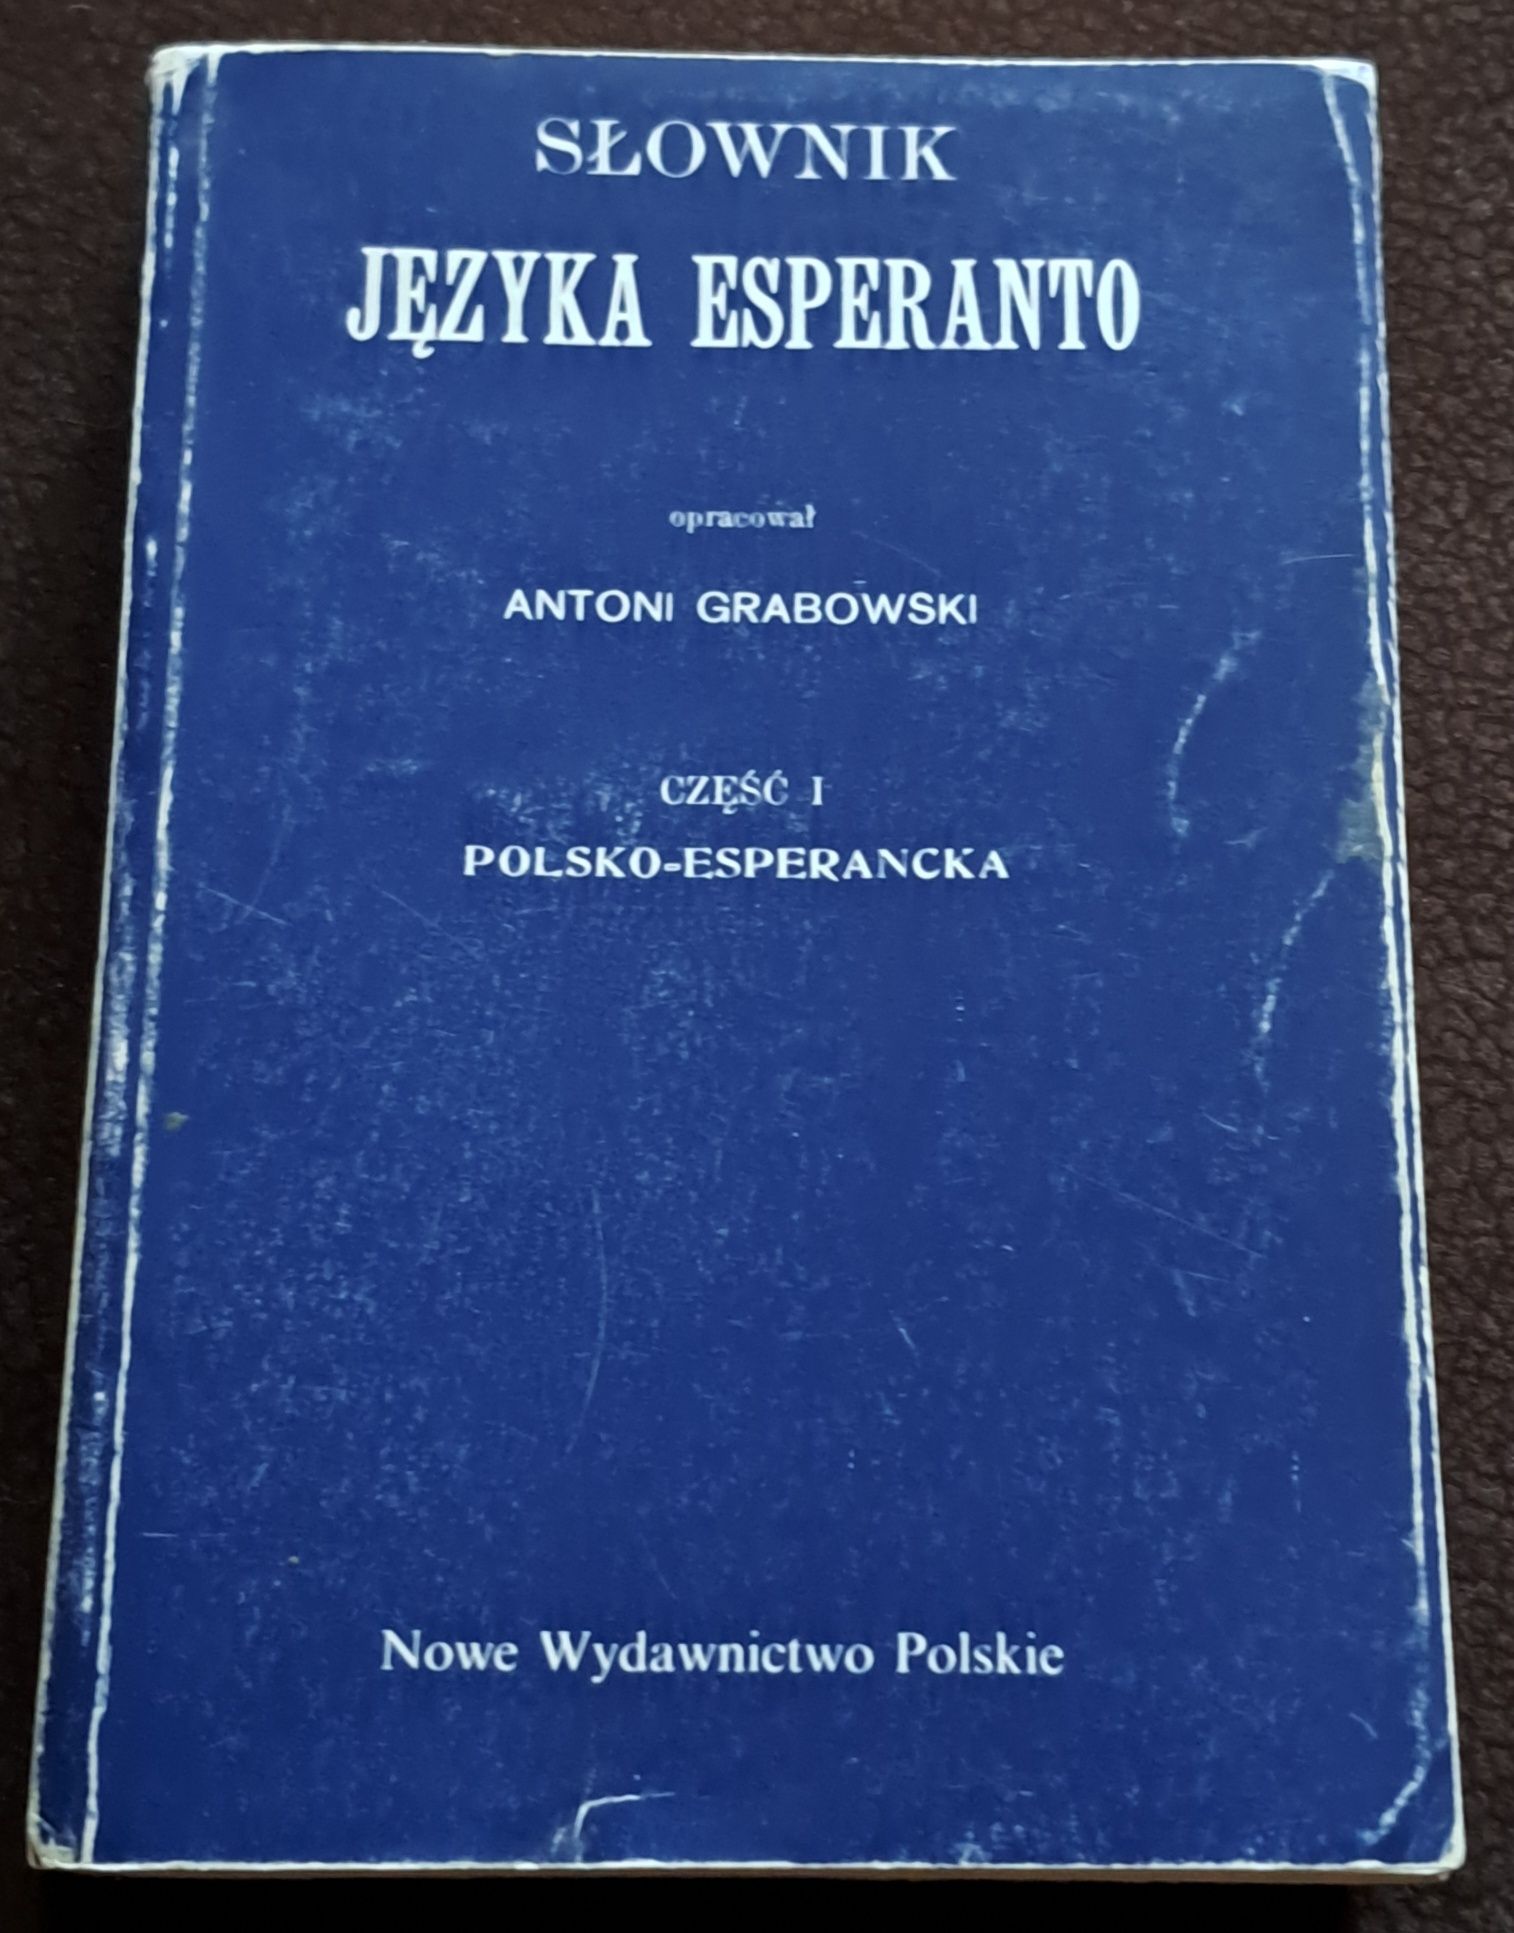 Słownik języka esperanto. Cz. 1. A. Grabowski.